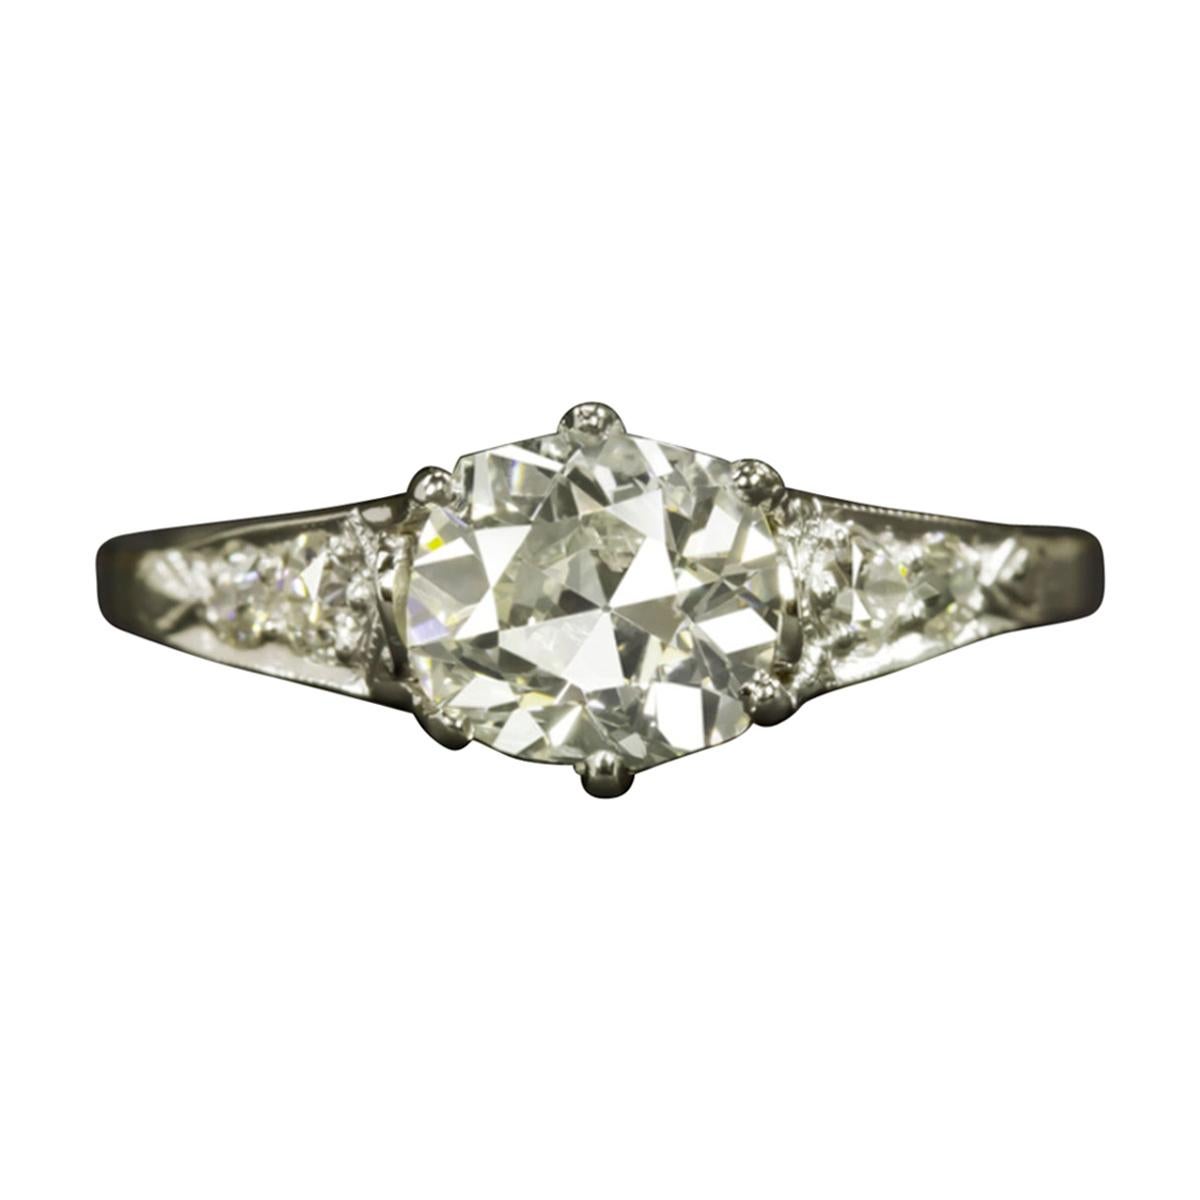 1.23 Carat Old Mine Cut Diamond Platinum Vintage Ring